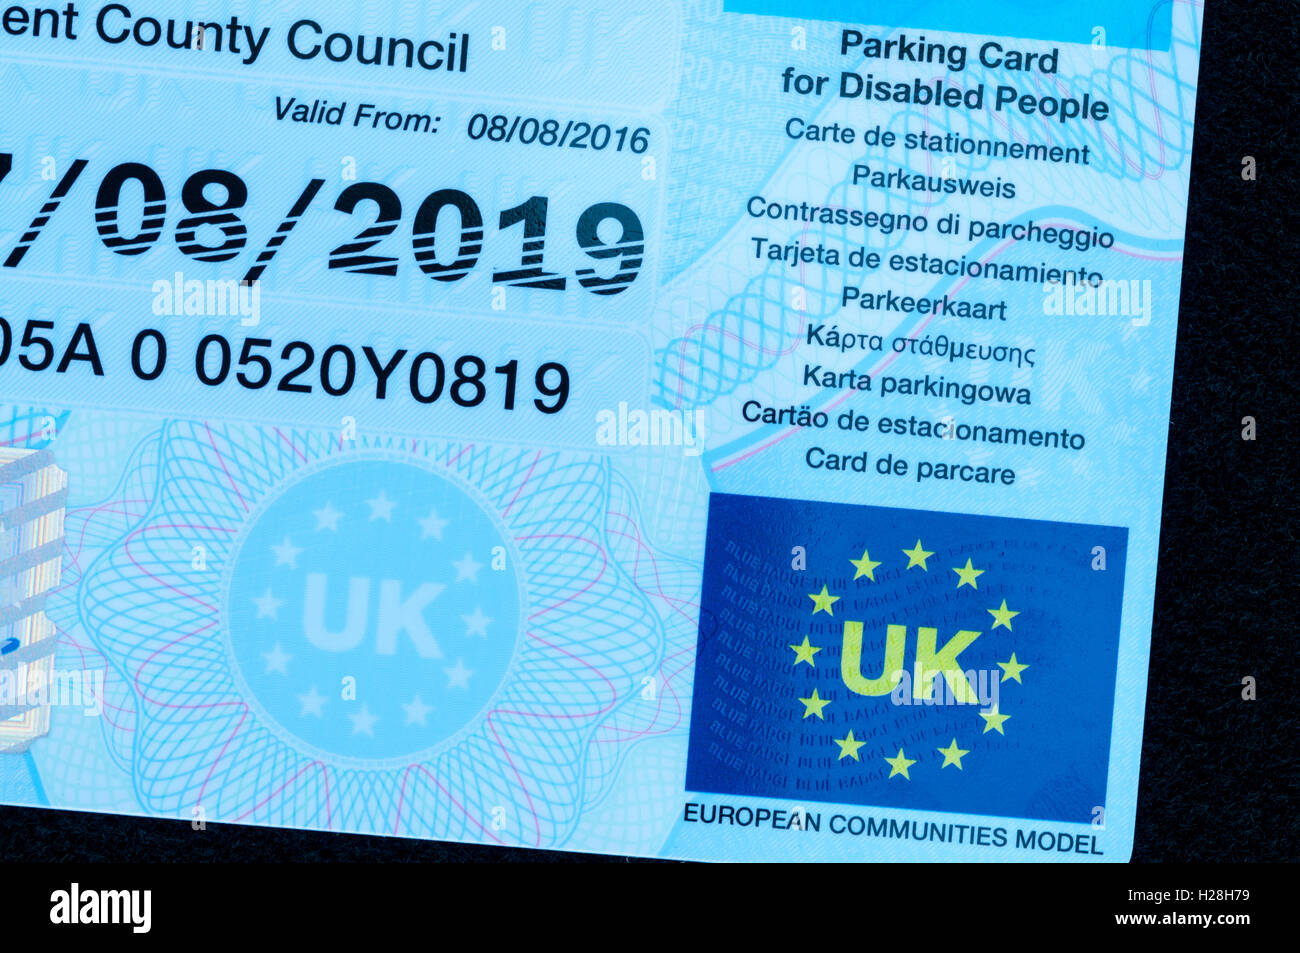 UK blue carte de stationnement pour personnes handicapées afficher le drapeau de l'UE avec des mots UK et modèle de la Communauté européenne. Banque D'Images